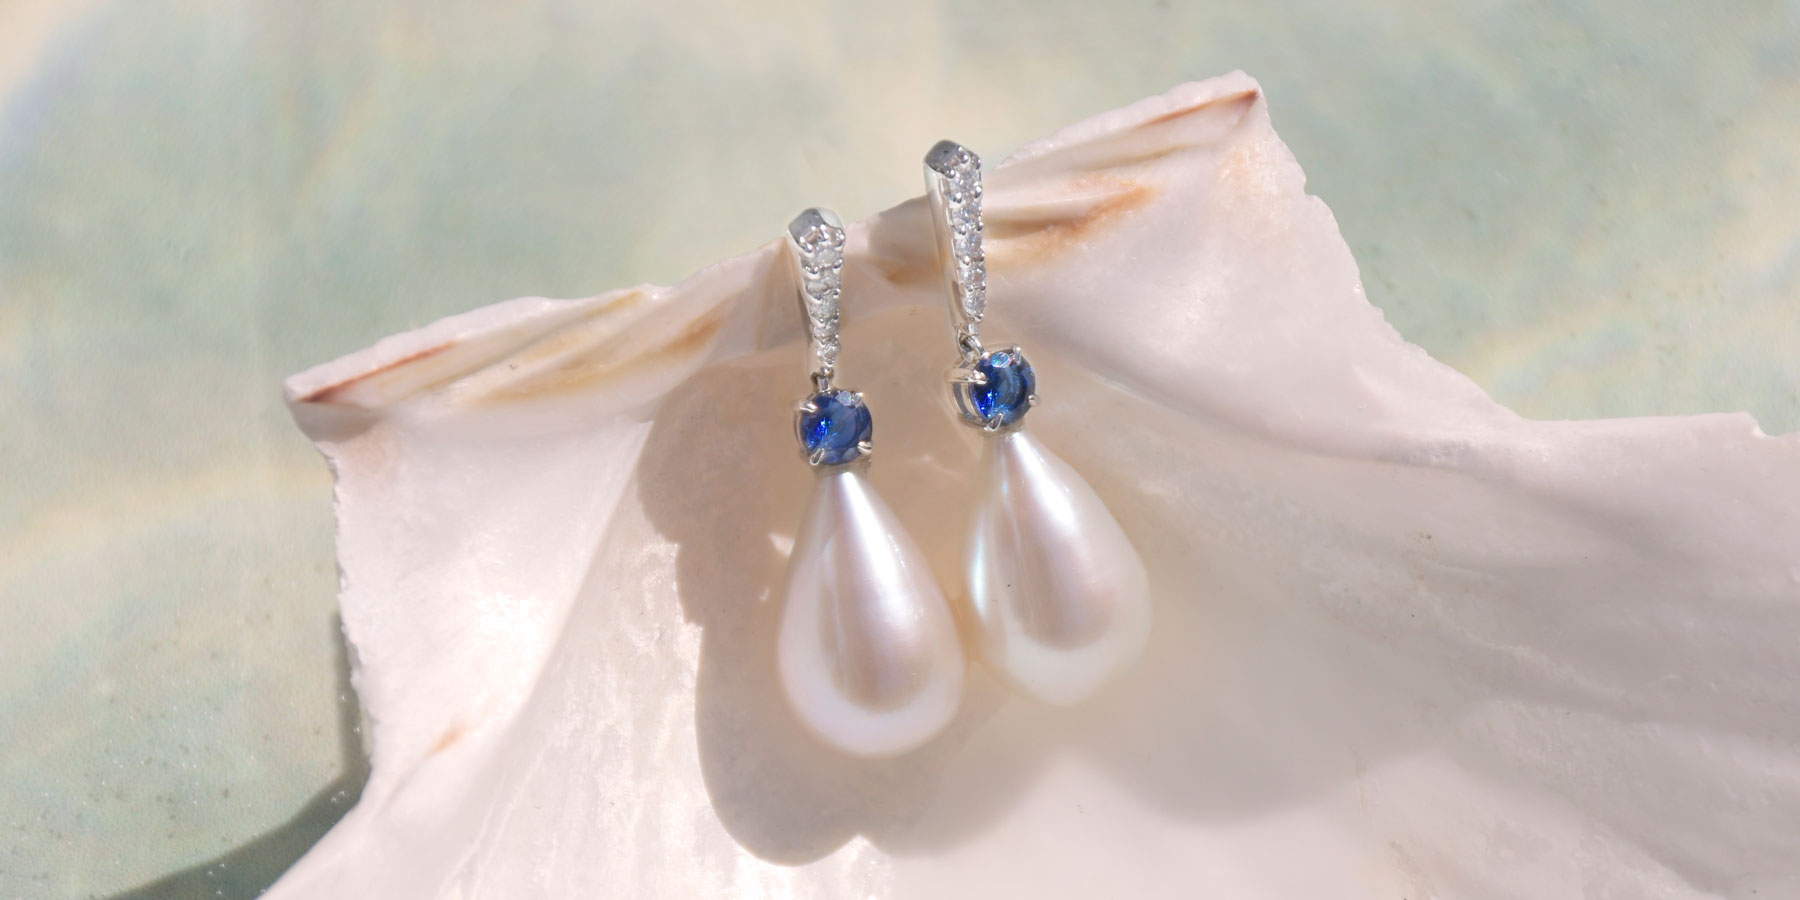 Hochzeitsschmuck-Inspiration mit klassischen Perlentropfen und blauen Saphir-Edelsteinohrringen | Brautschmuck-Guide mit Fenton